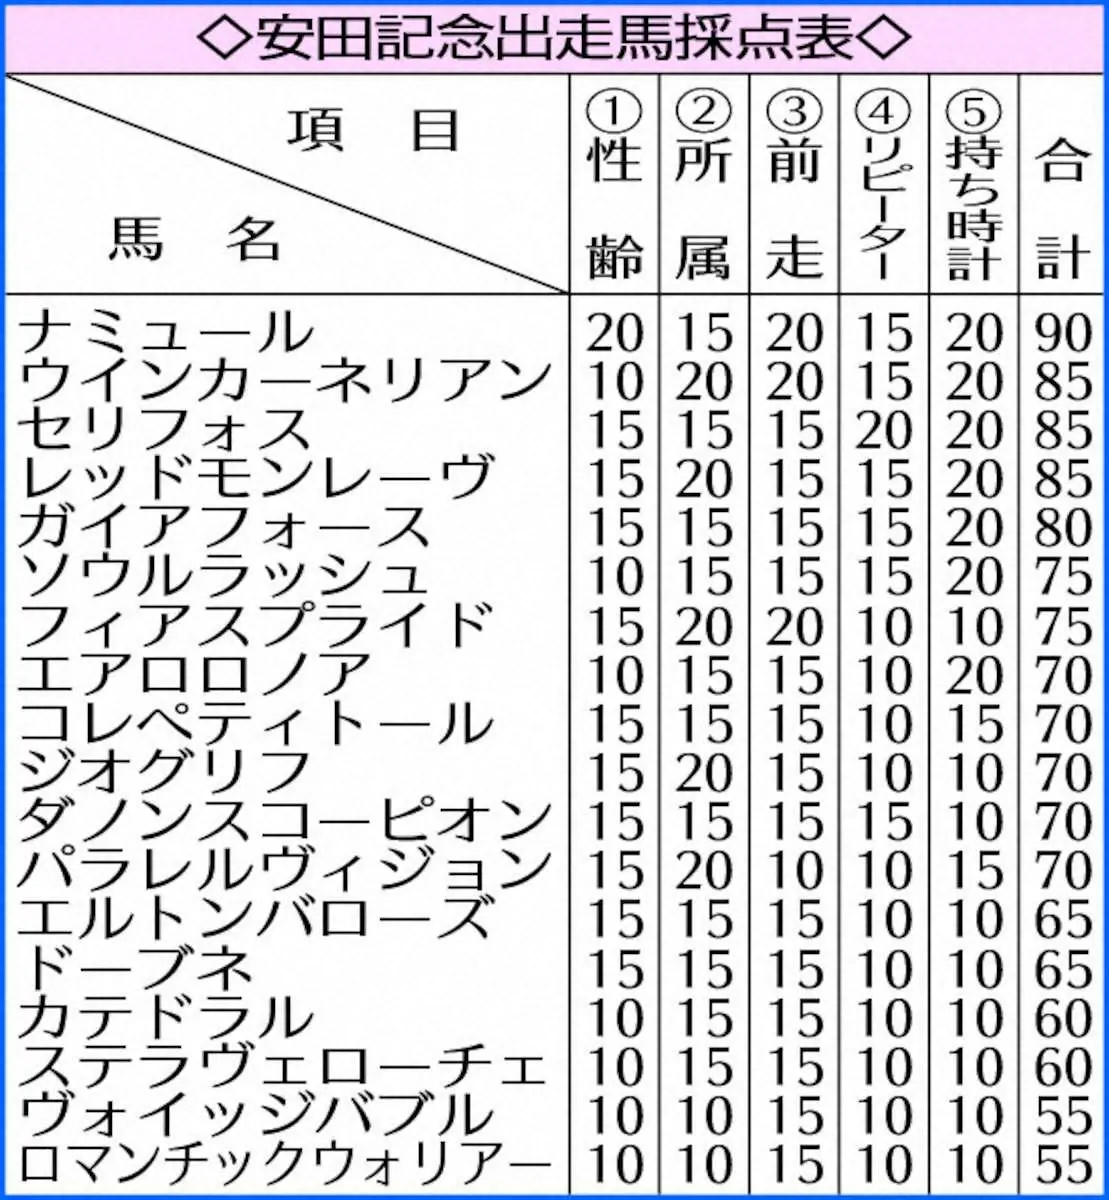 【安田記念】ナミュール90点　本領発揮で秋春マイルG1制覇へ!